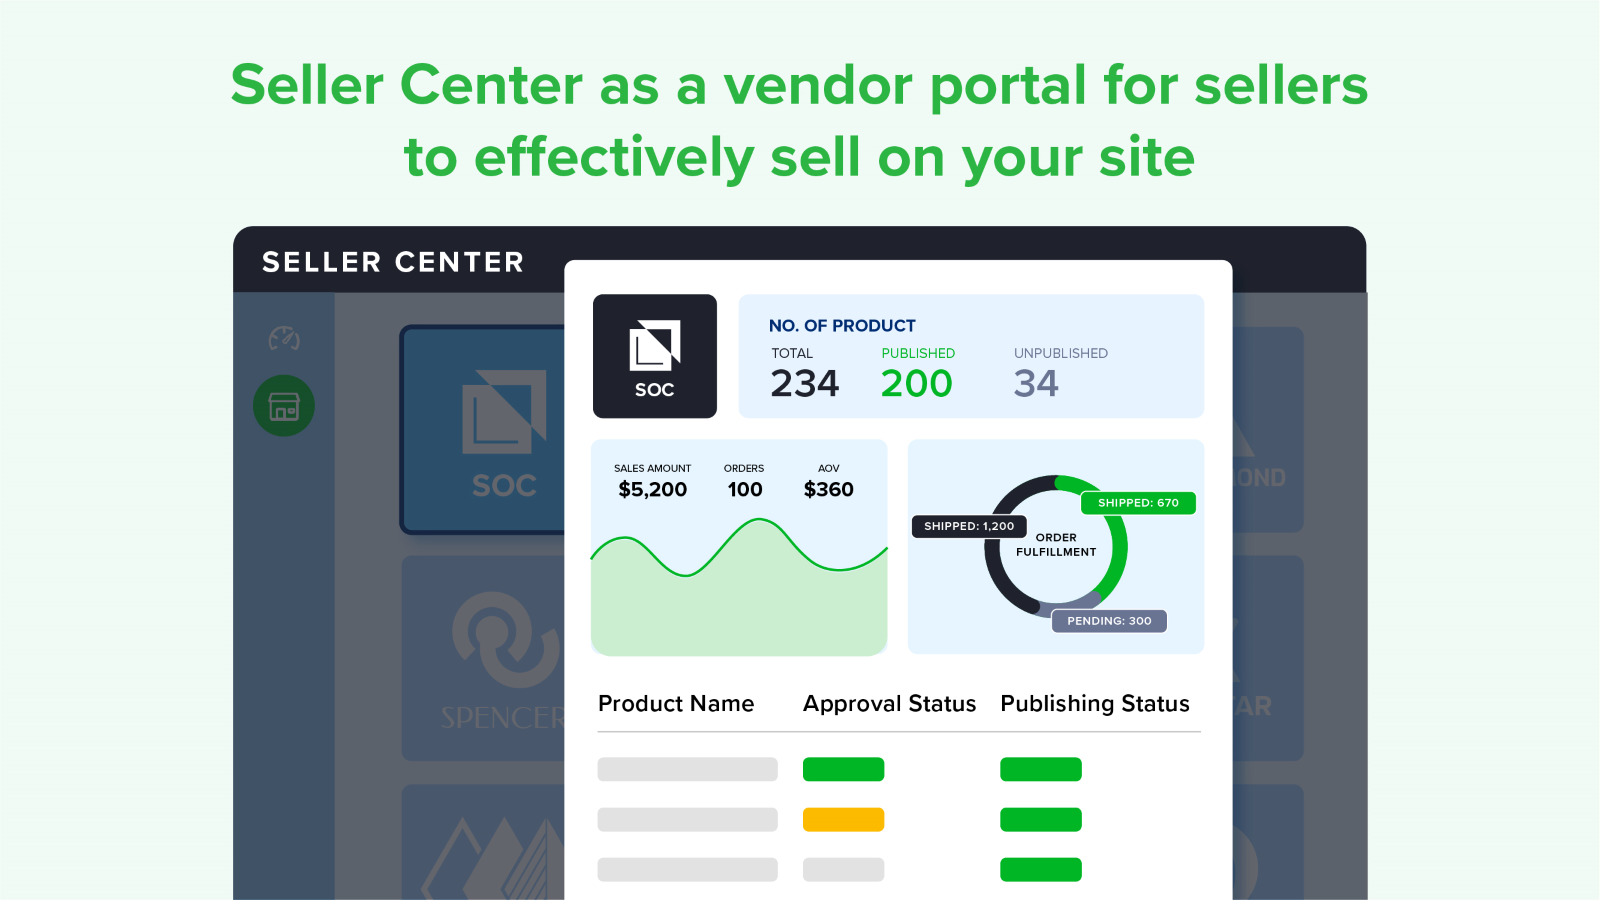 CLEARomni Vendor Portal Seller Center